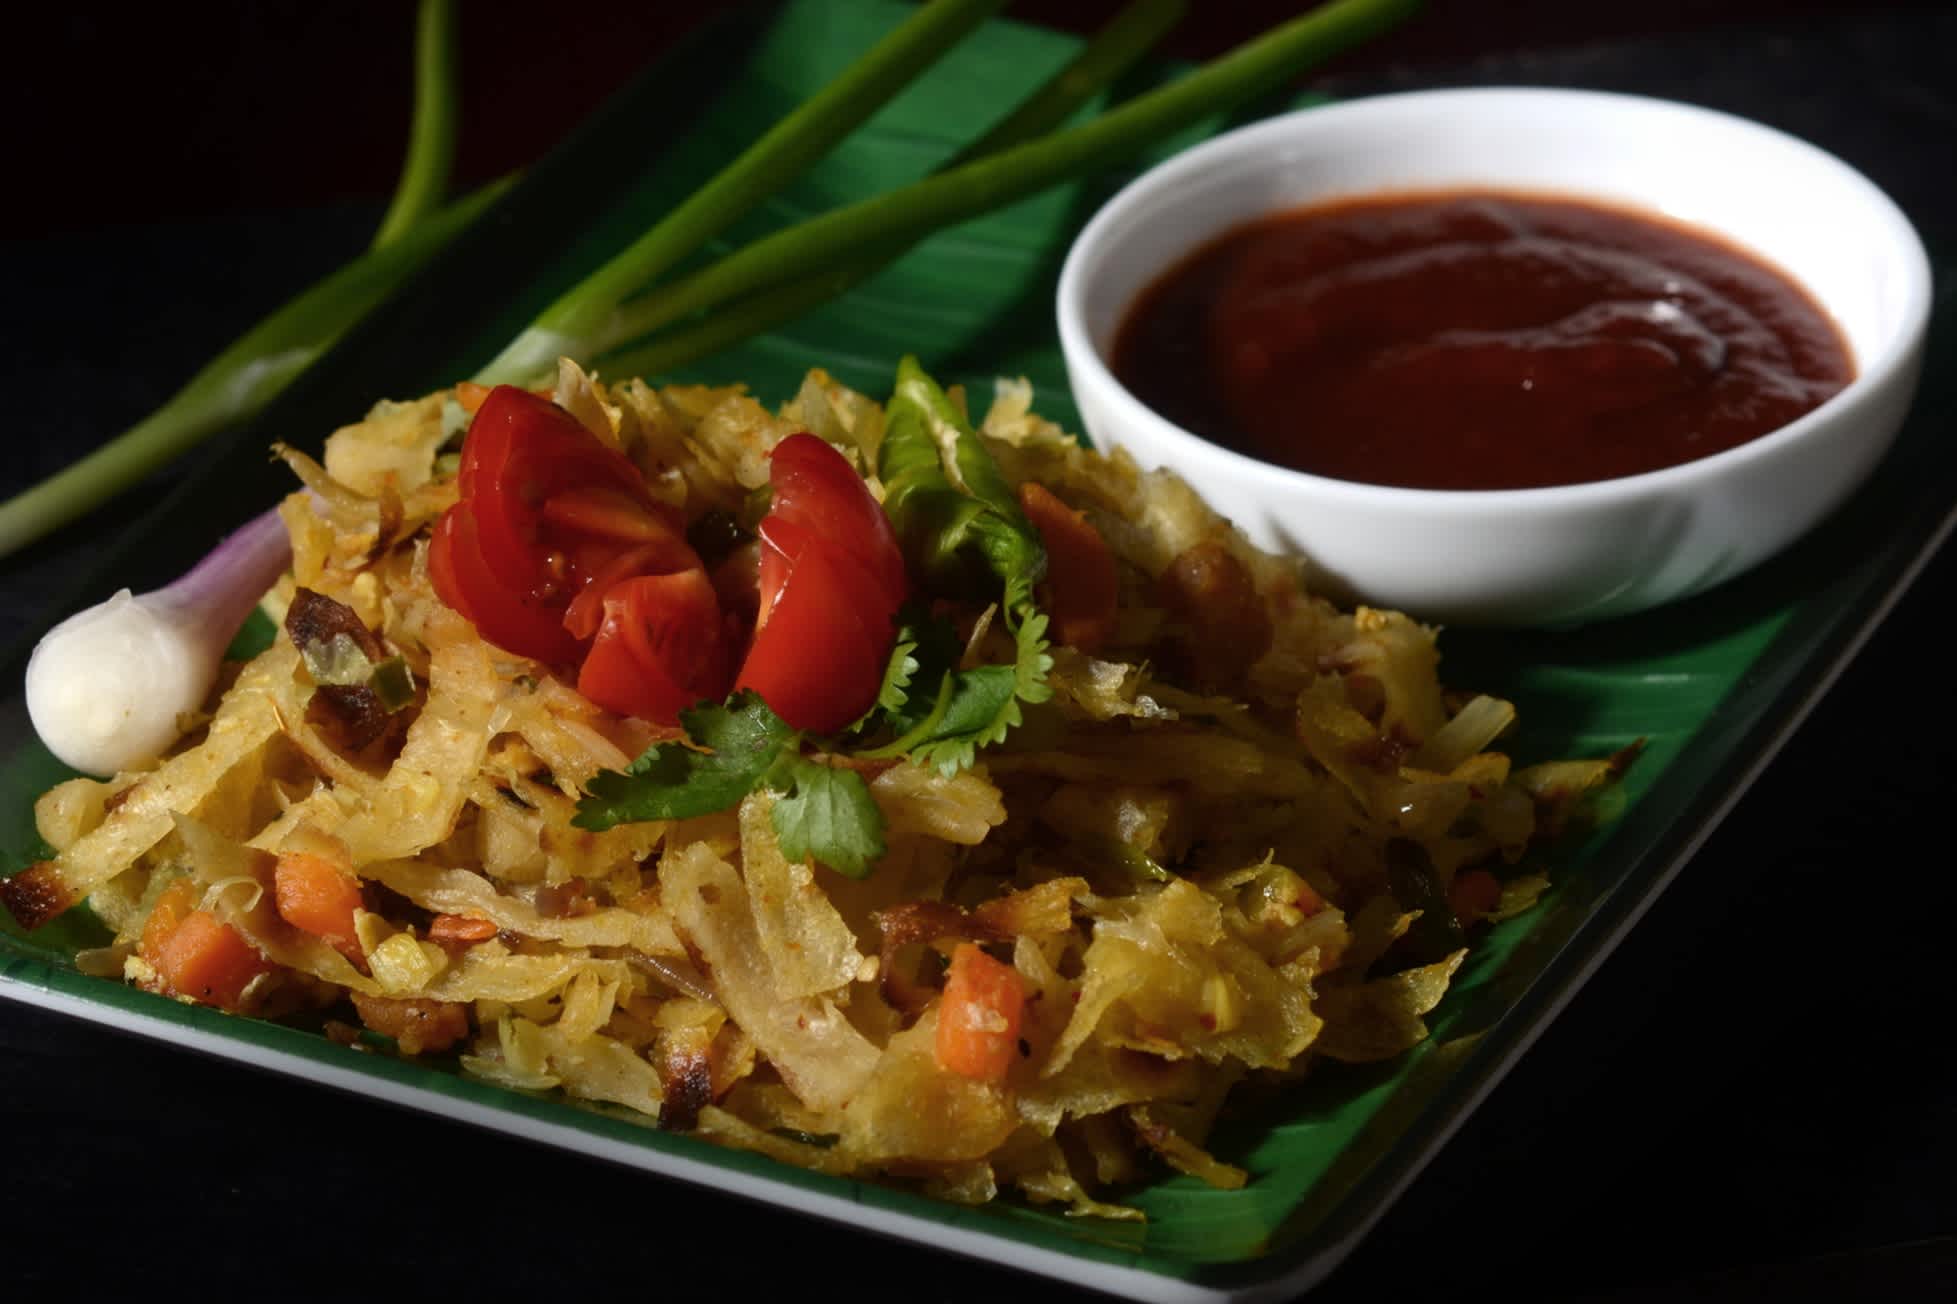 Ein würziges vegetarisches Ein-Gericht-Abendessen mit Curry-Aromen. Gemüse kottu roti ist ein traditionelles sri-lankisches Streetfood.